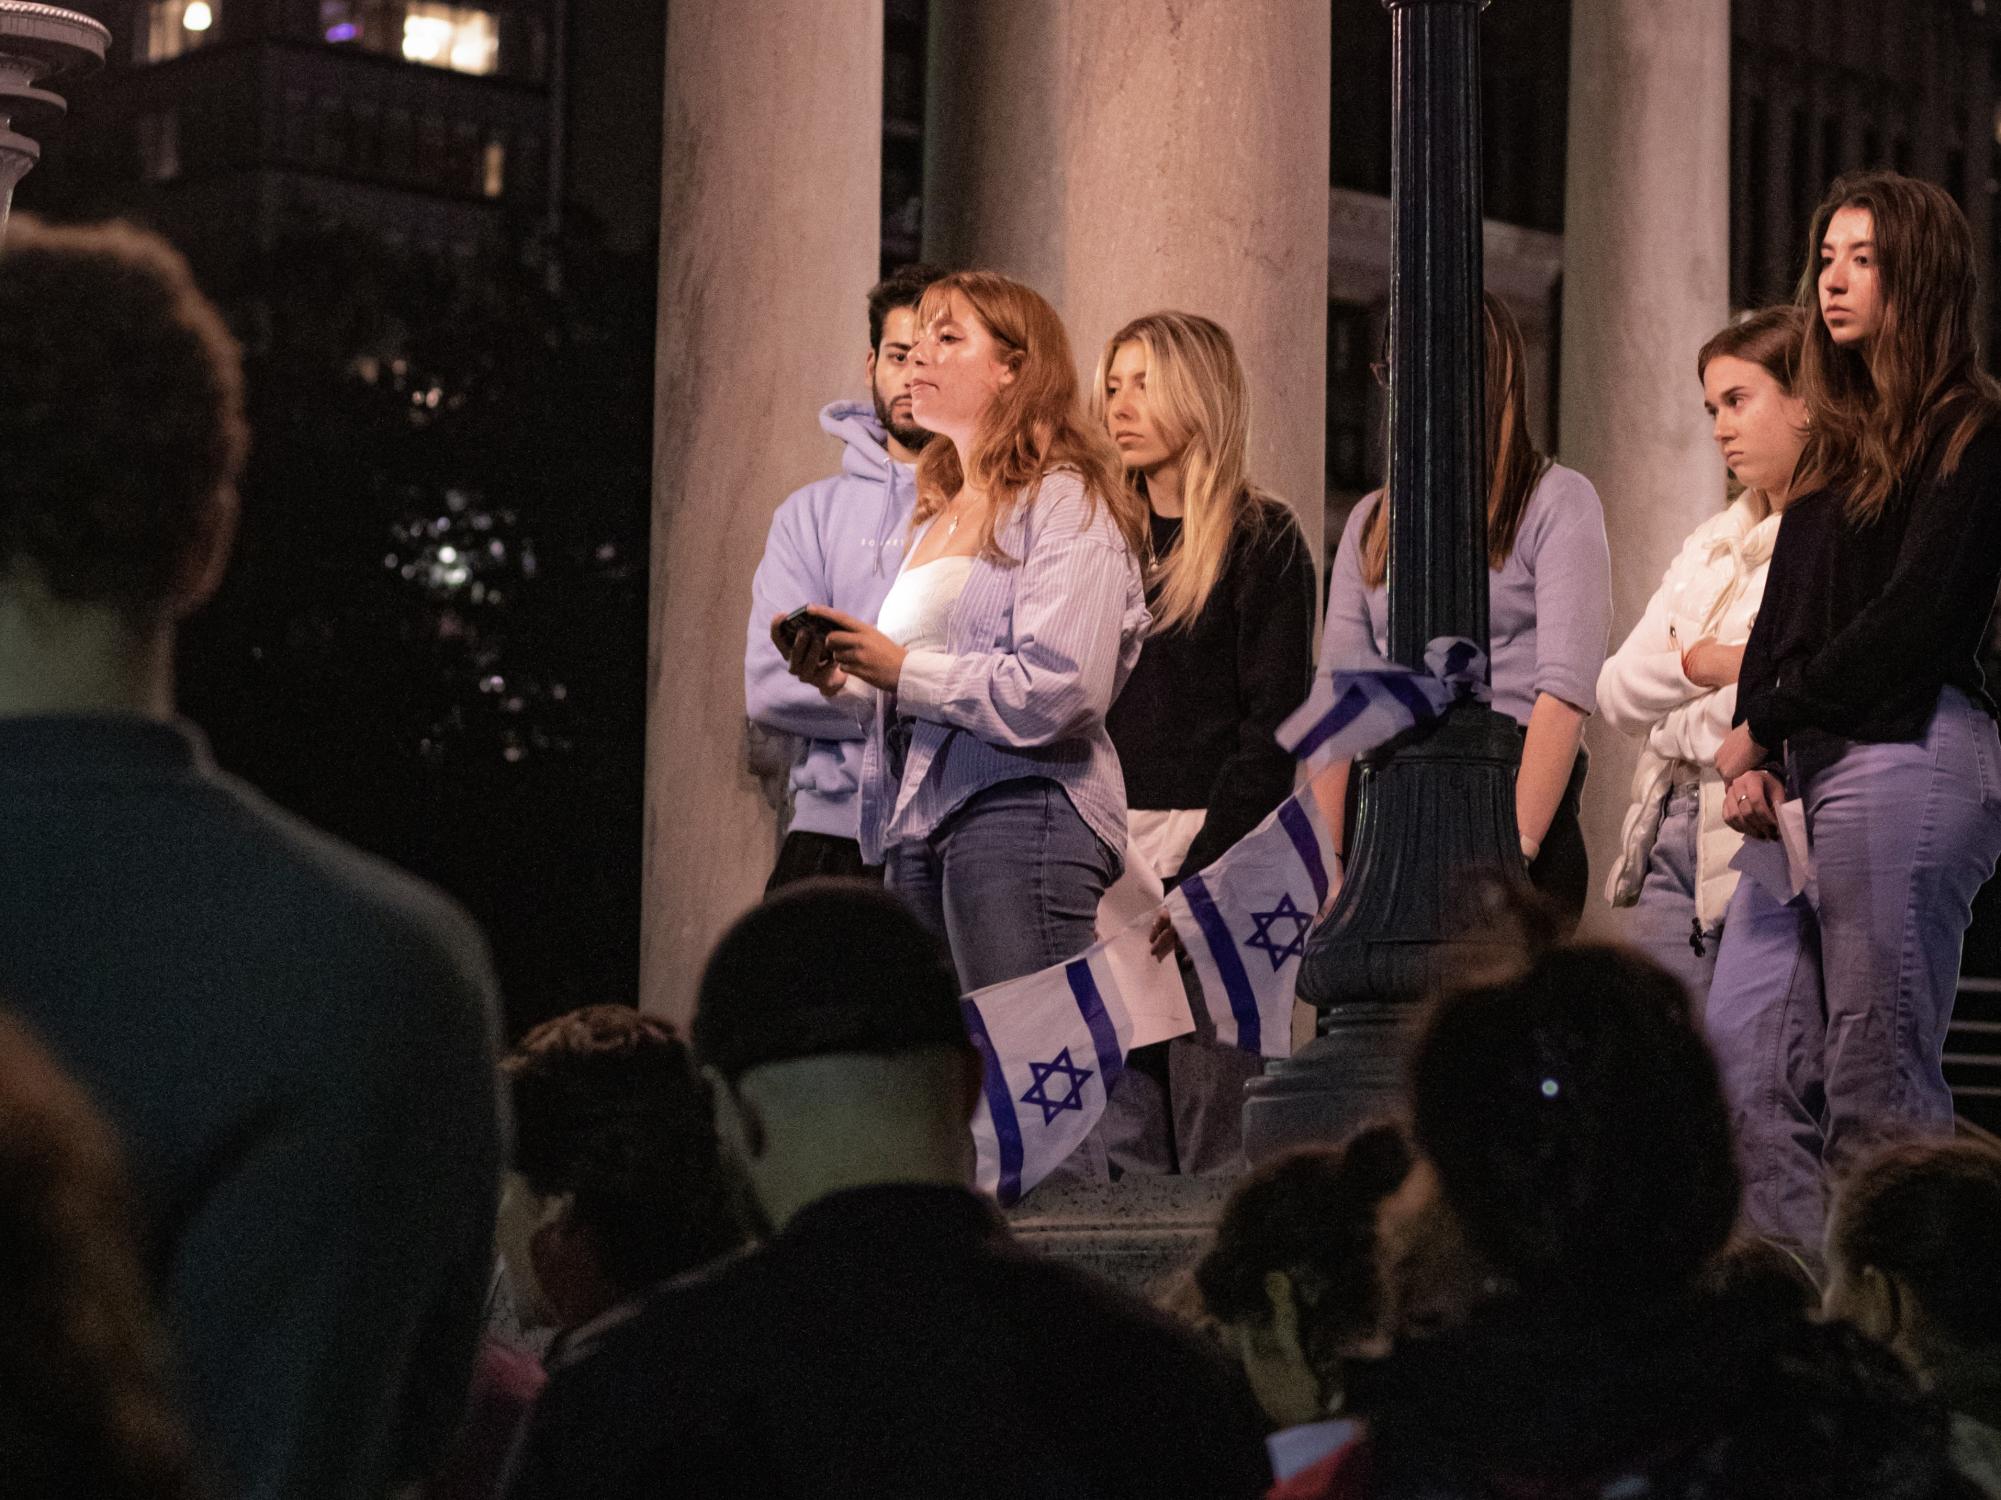 “我们团结为一个犹太人民族”：埃默森学生组织烛光守夜，支持以色列和波士顿的犹太社区